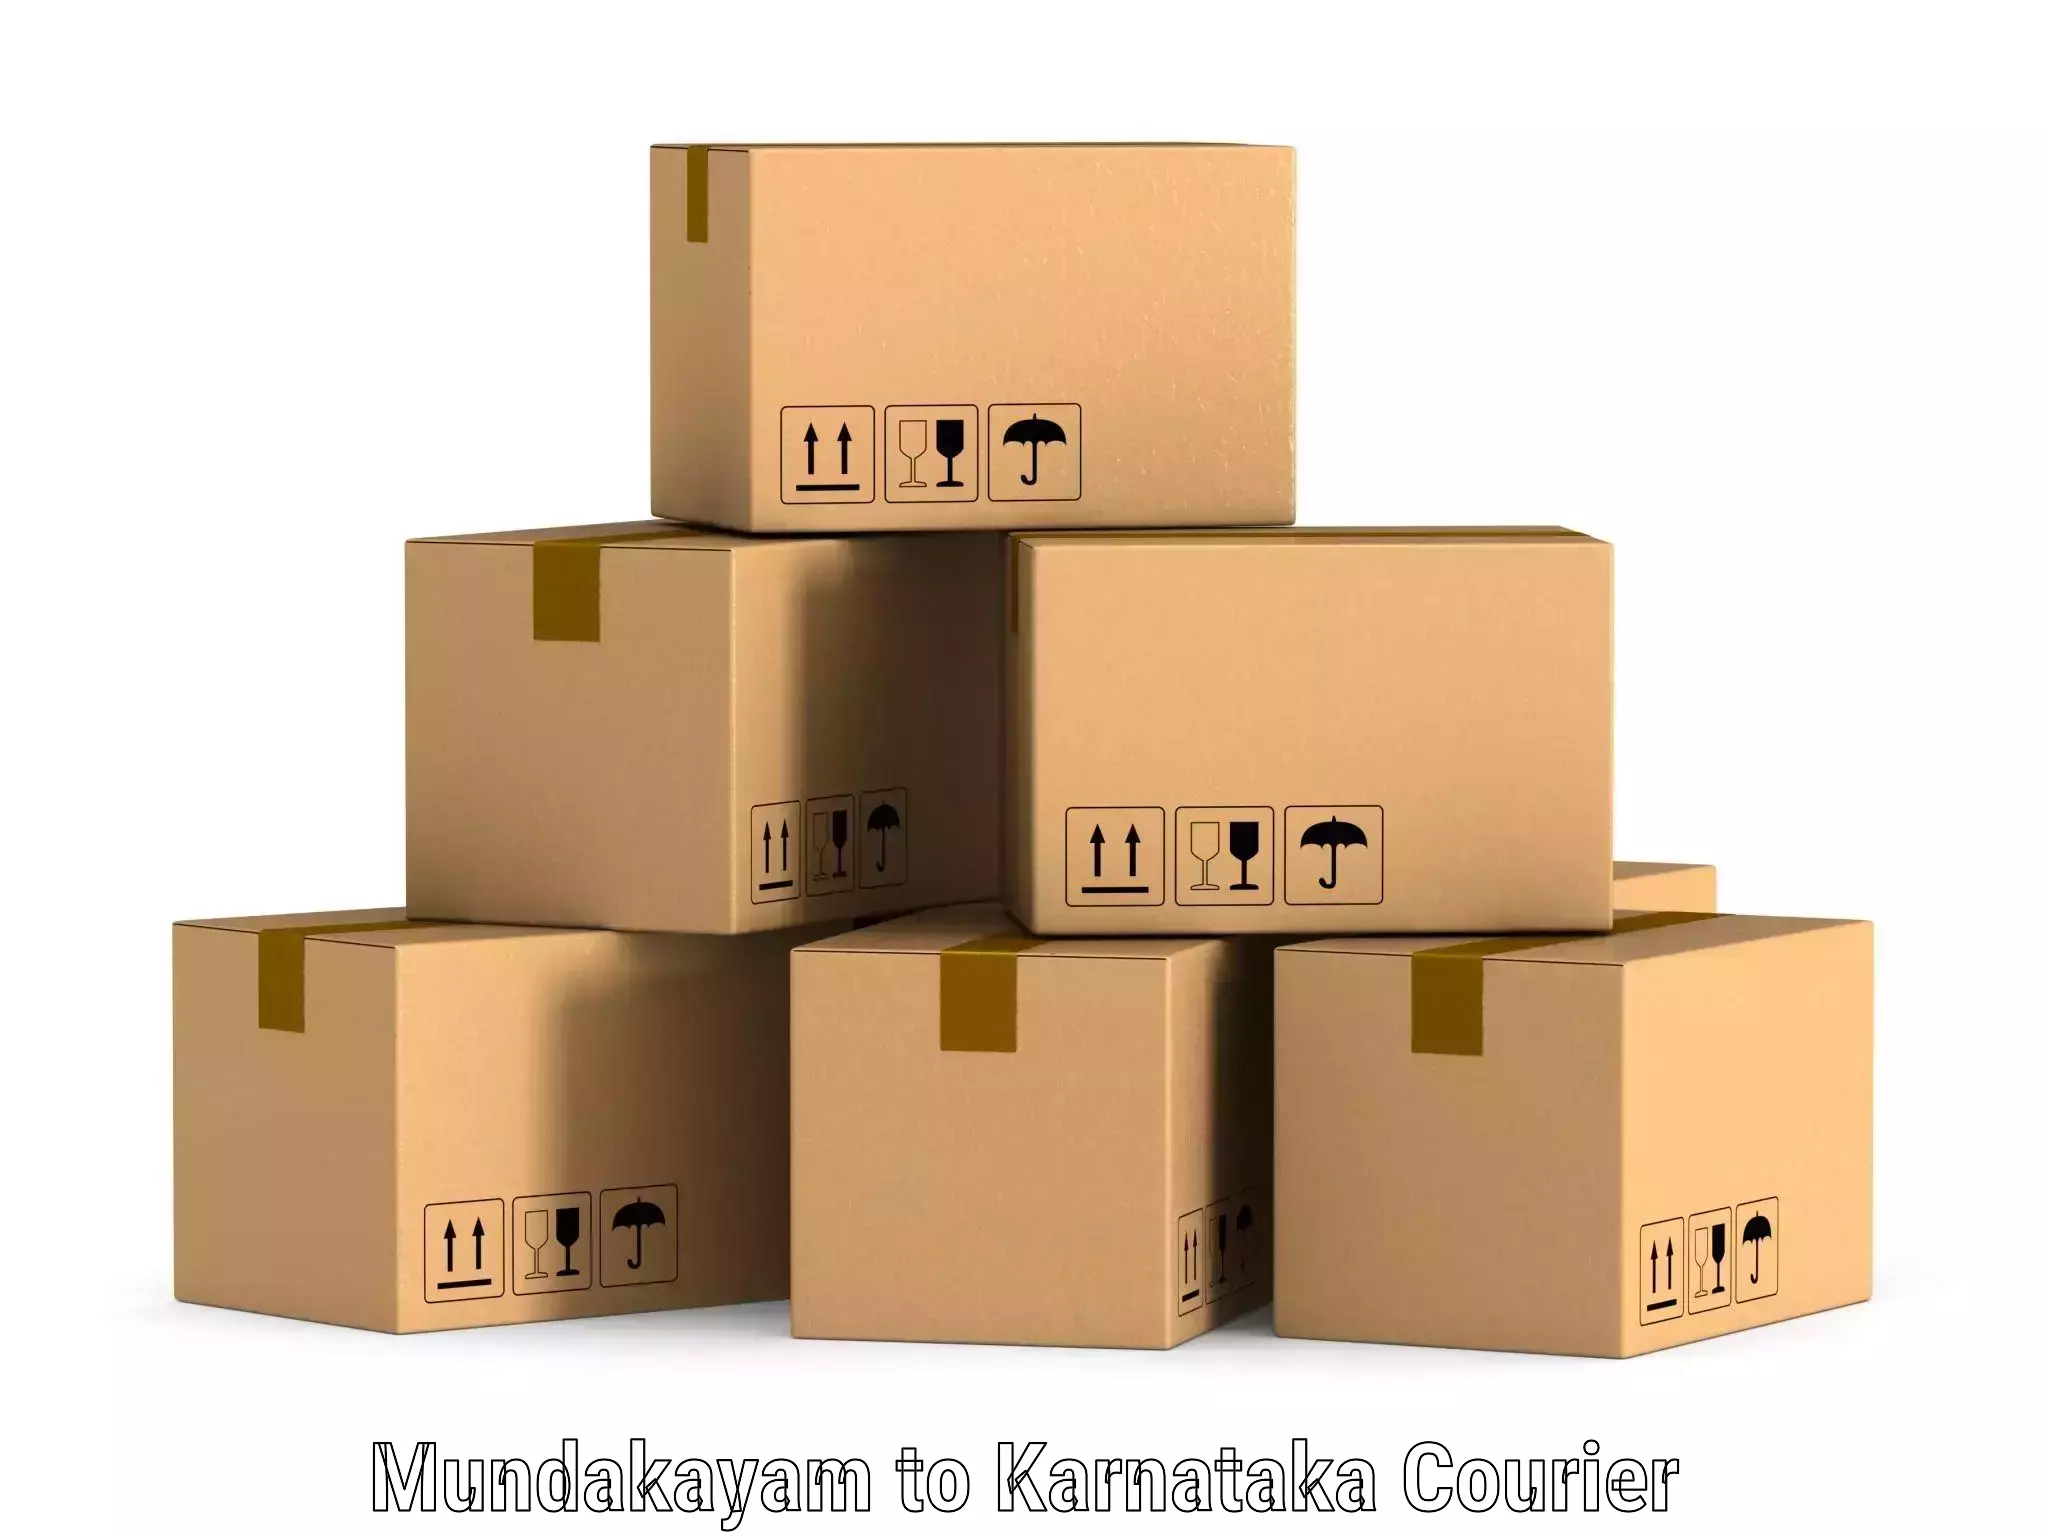 Sustainable shipping practices Mundakayam to Devadurga